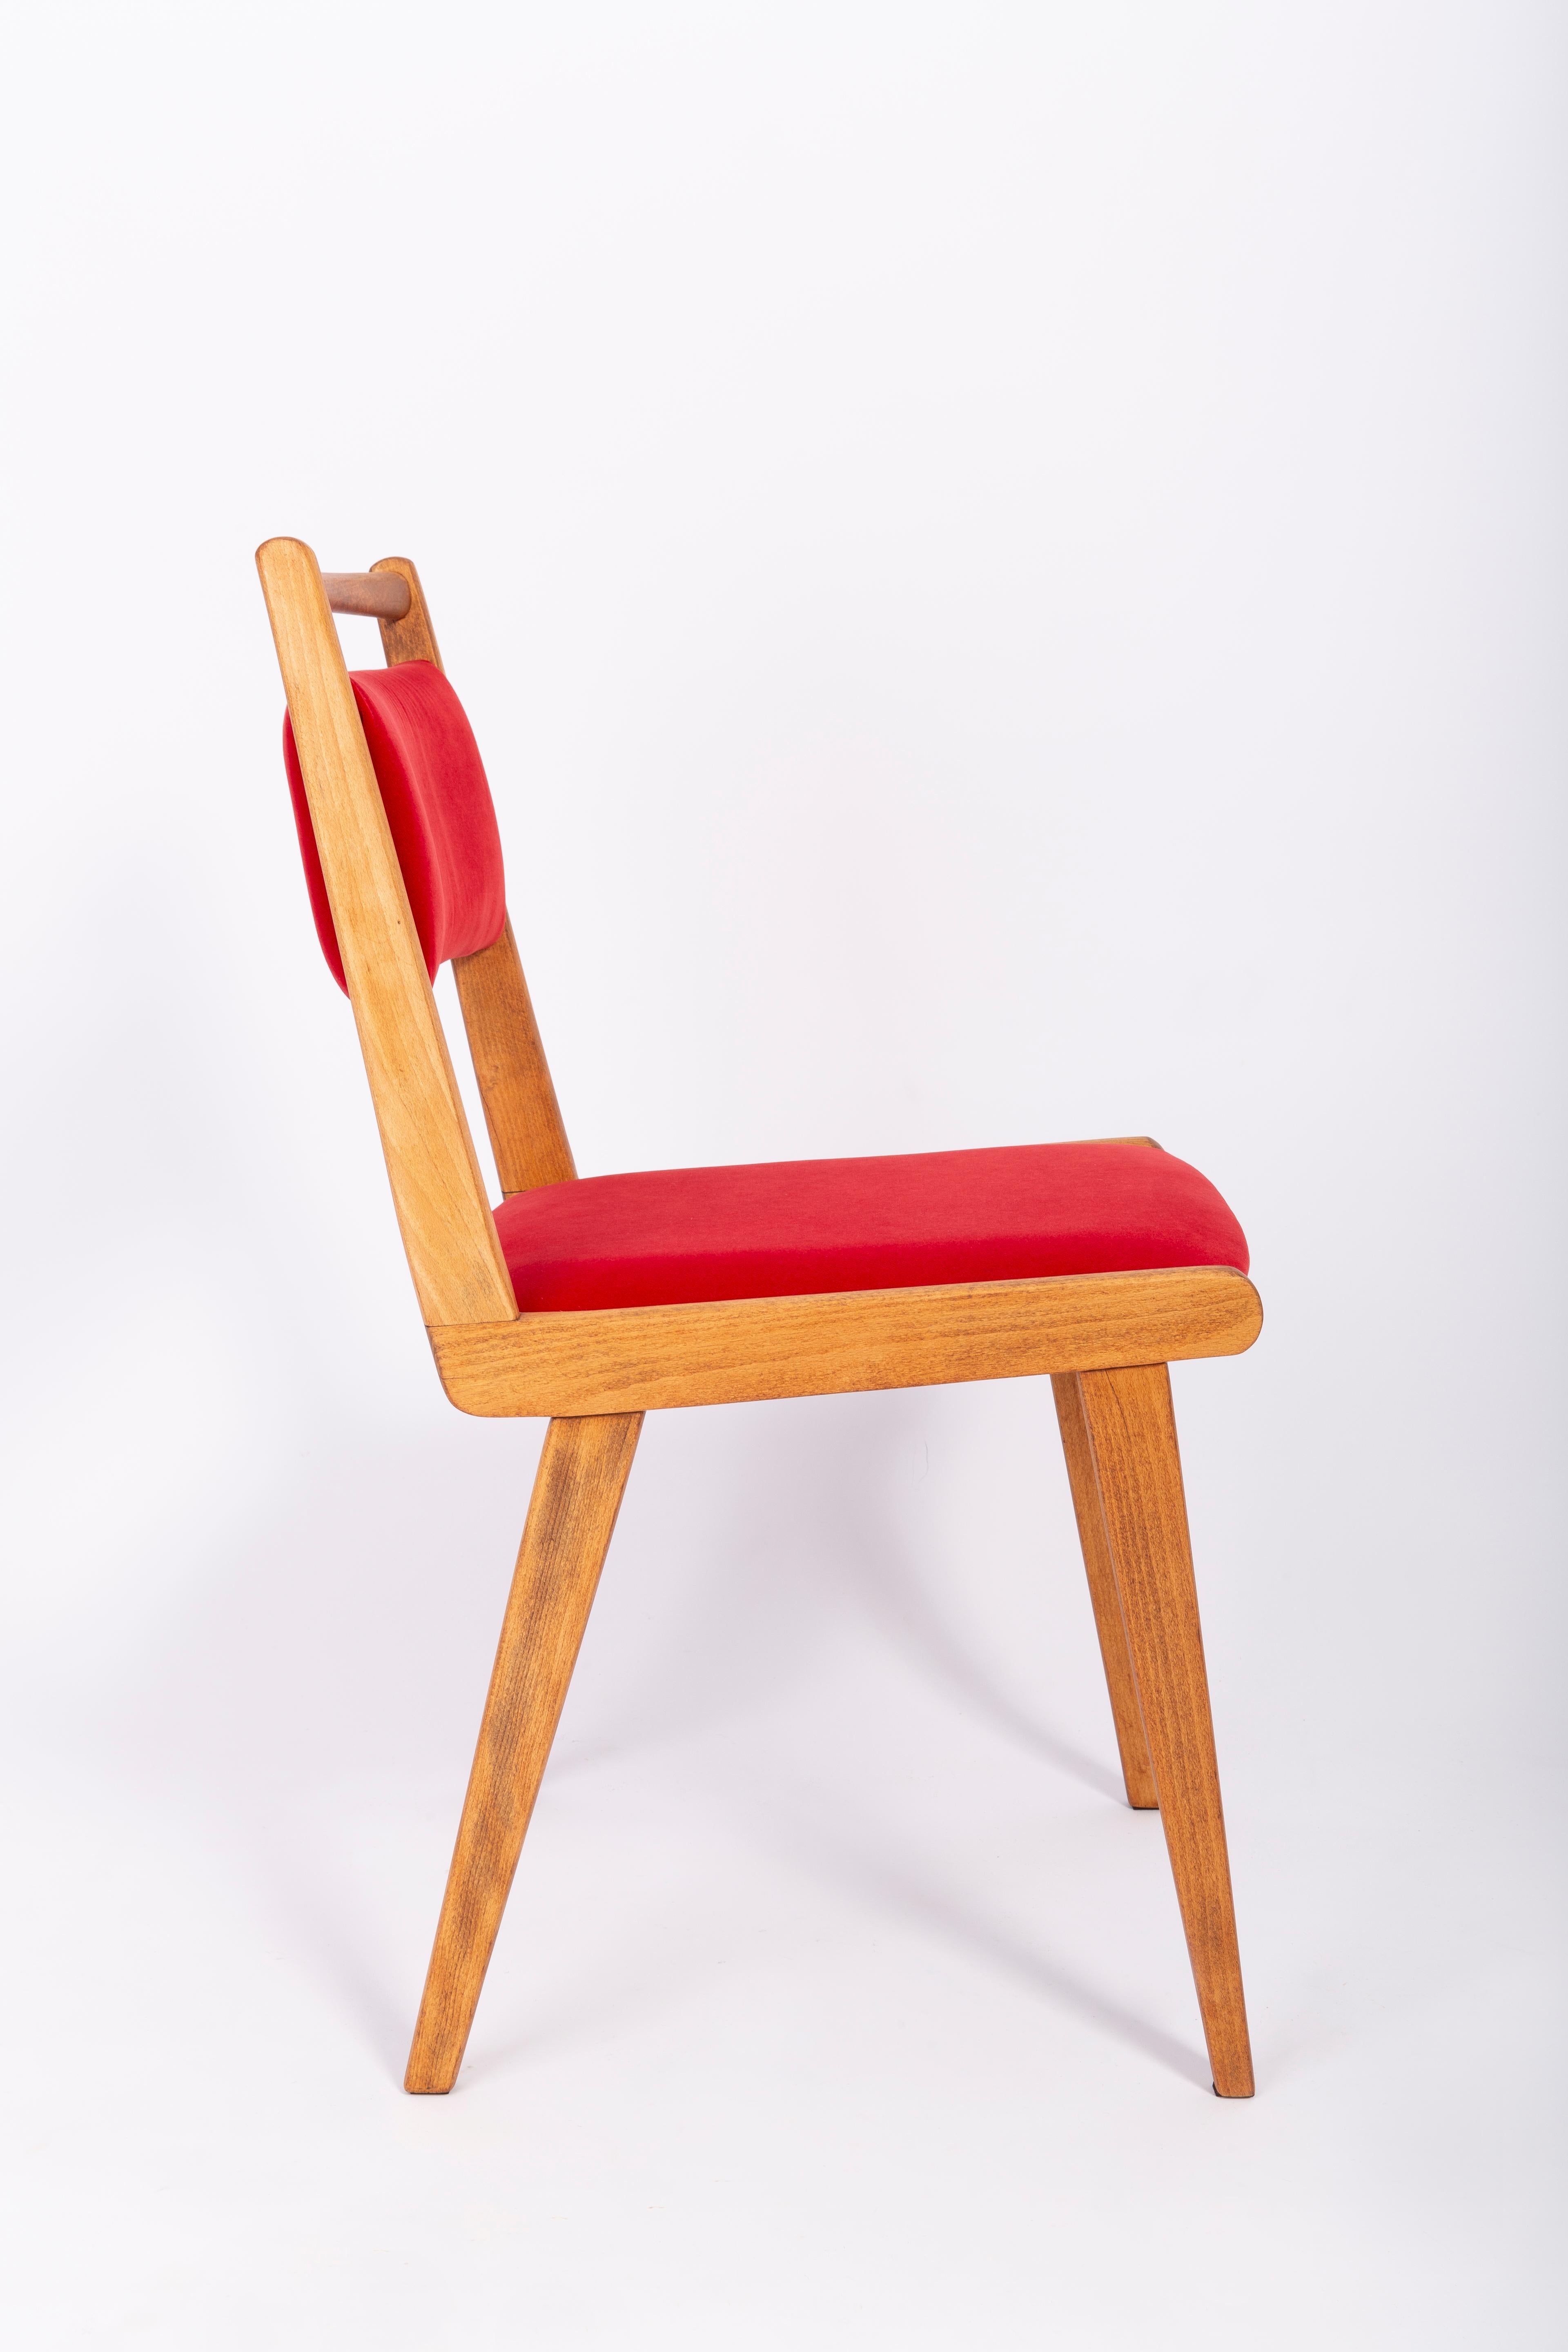 poland chair